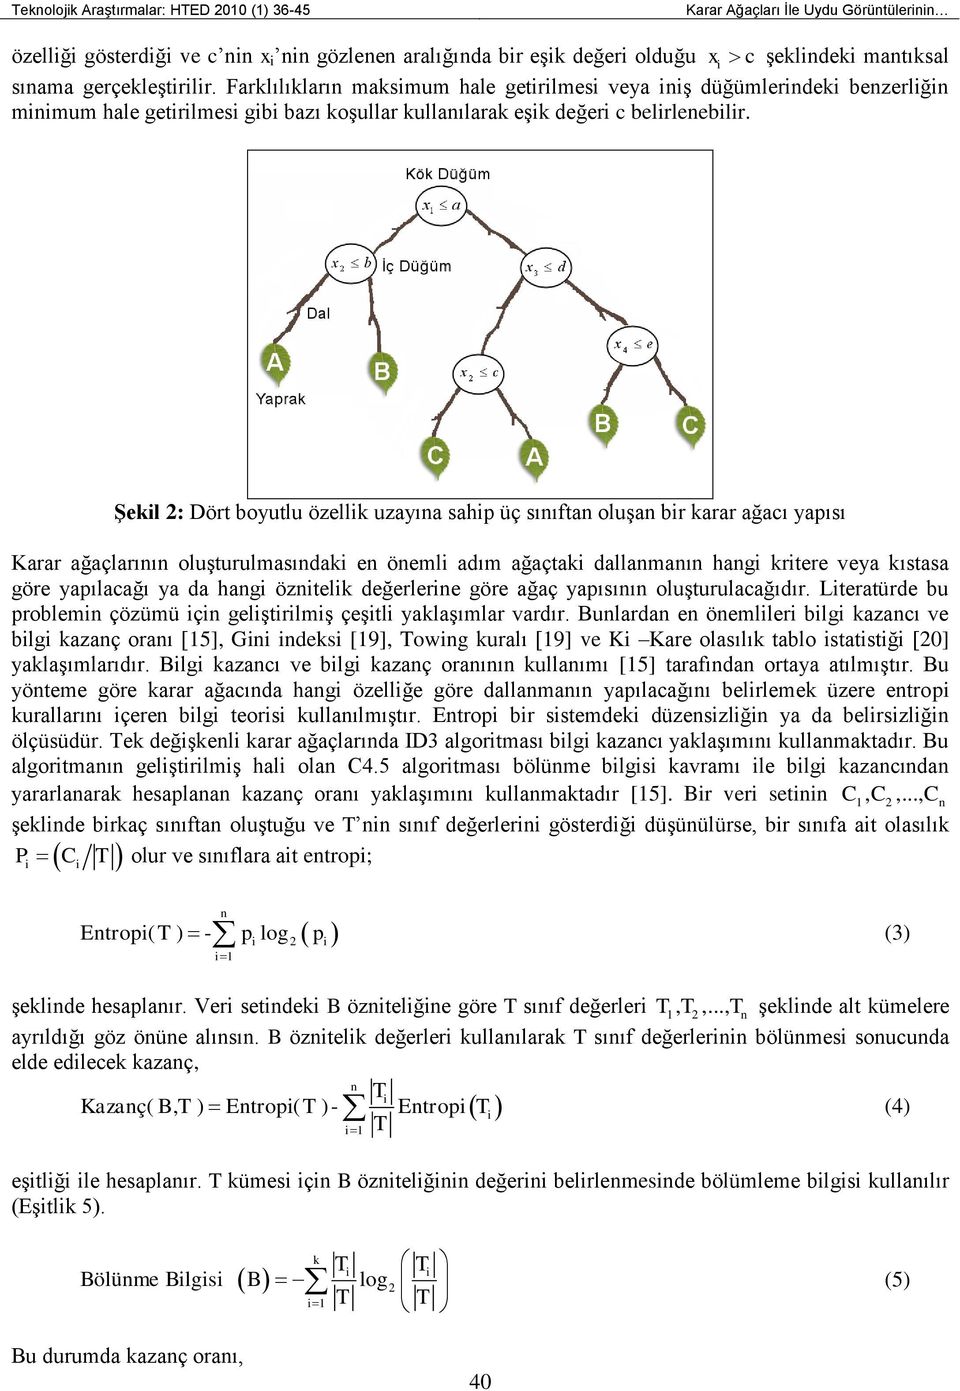 ġekil 2: Dört boyutlu özellik uzayına sahip üç sınıftan oluşan bir karar ağacı yapısı Karar ağaçlarının oluşturulmasındaki en önemli adım ağaçtaki dallanmanın hangi kritere veya kıstasa göre